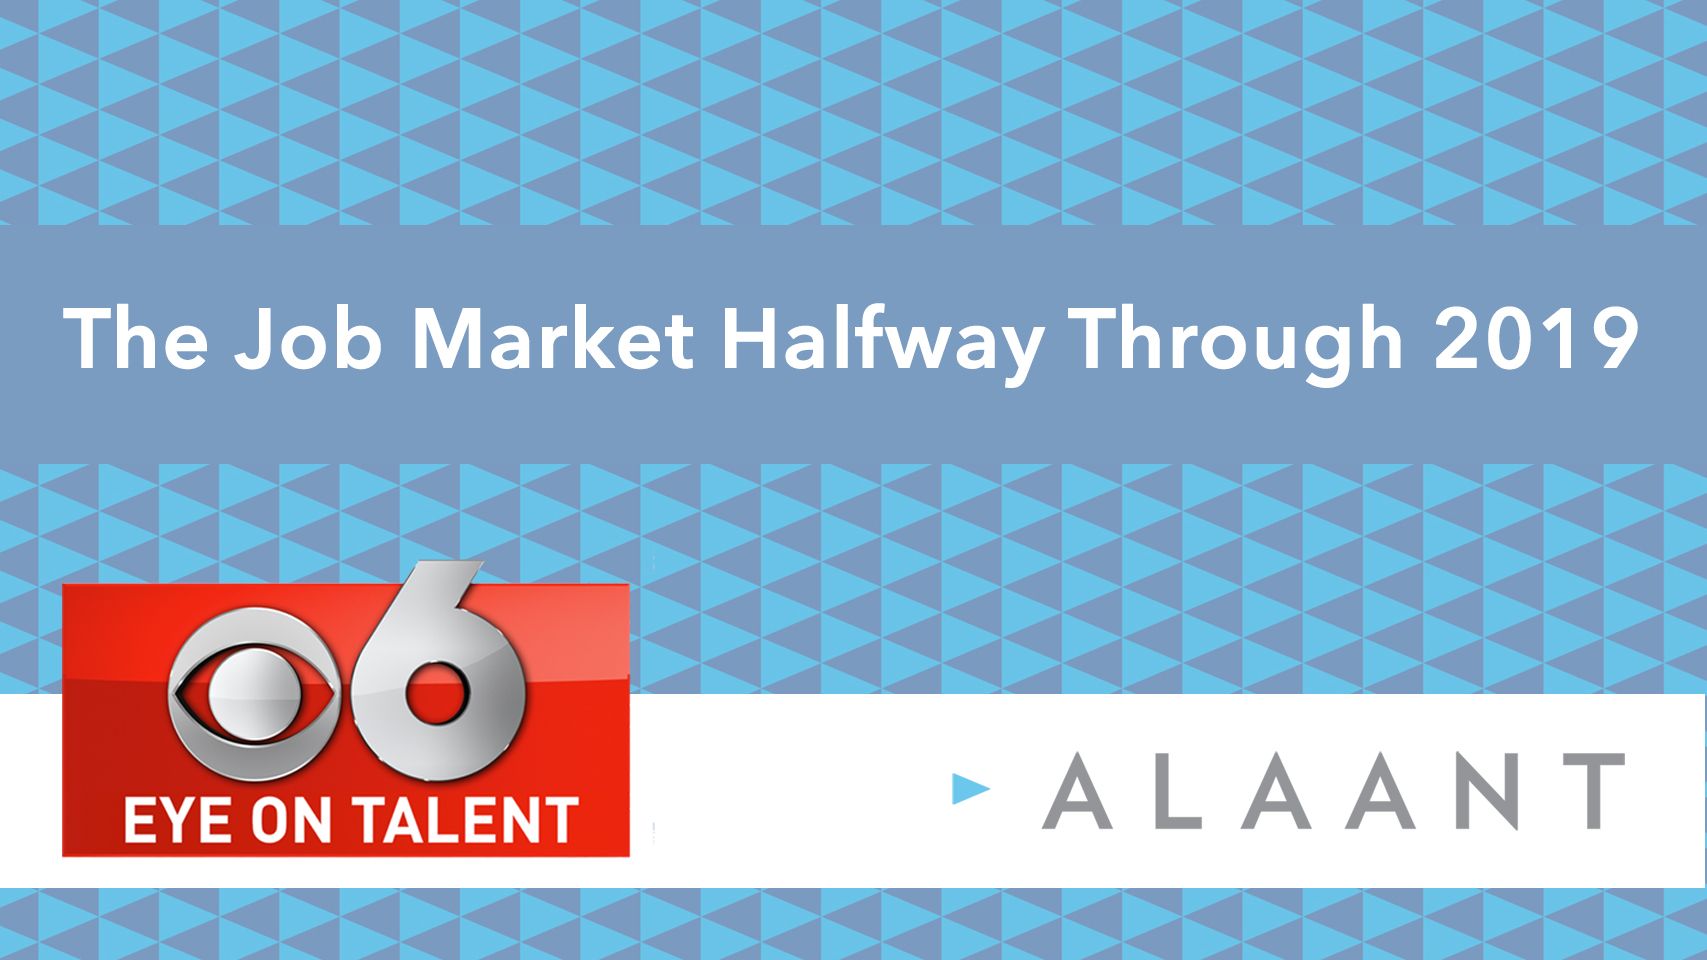 Alaant Eye on Talent: The Job Market Halfway Through 2019